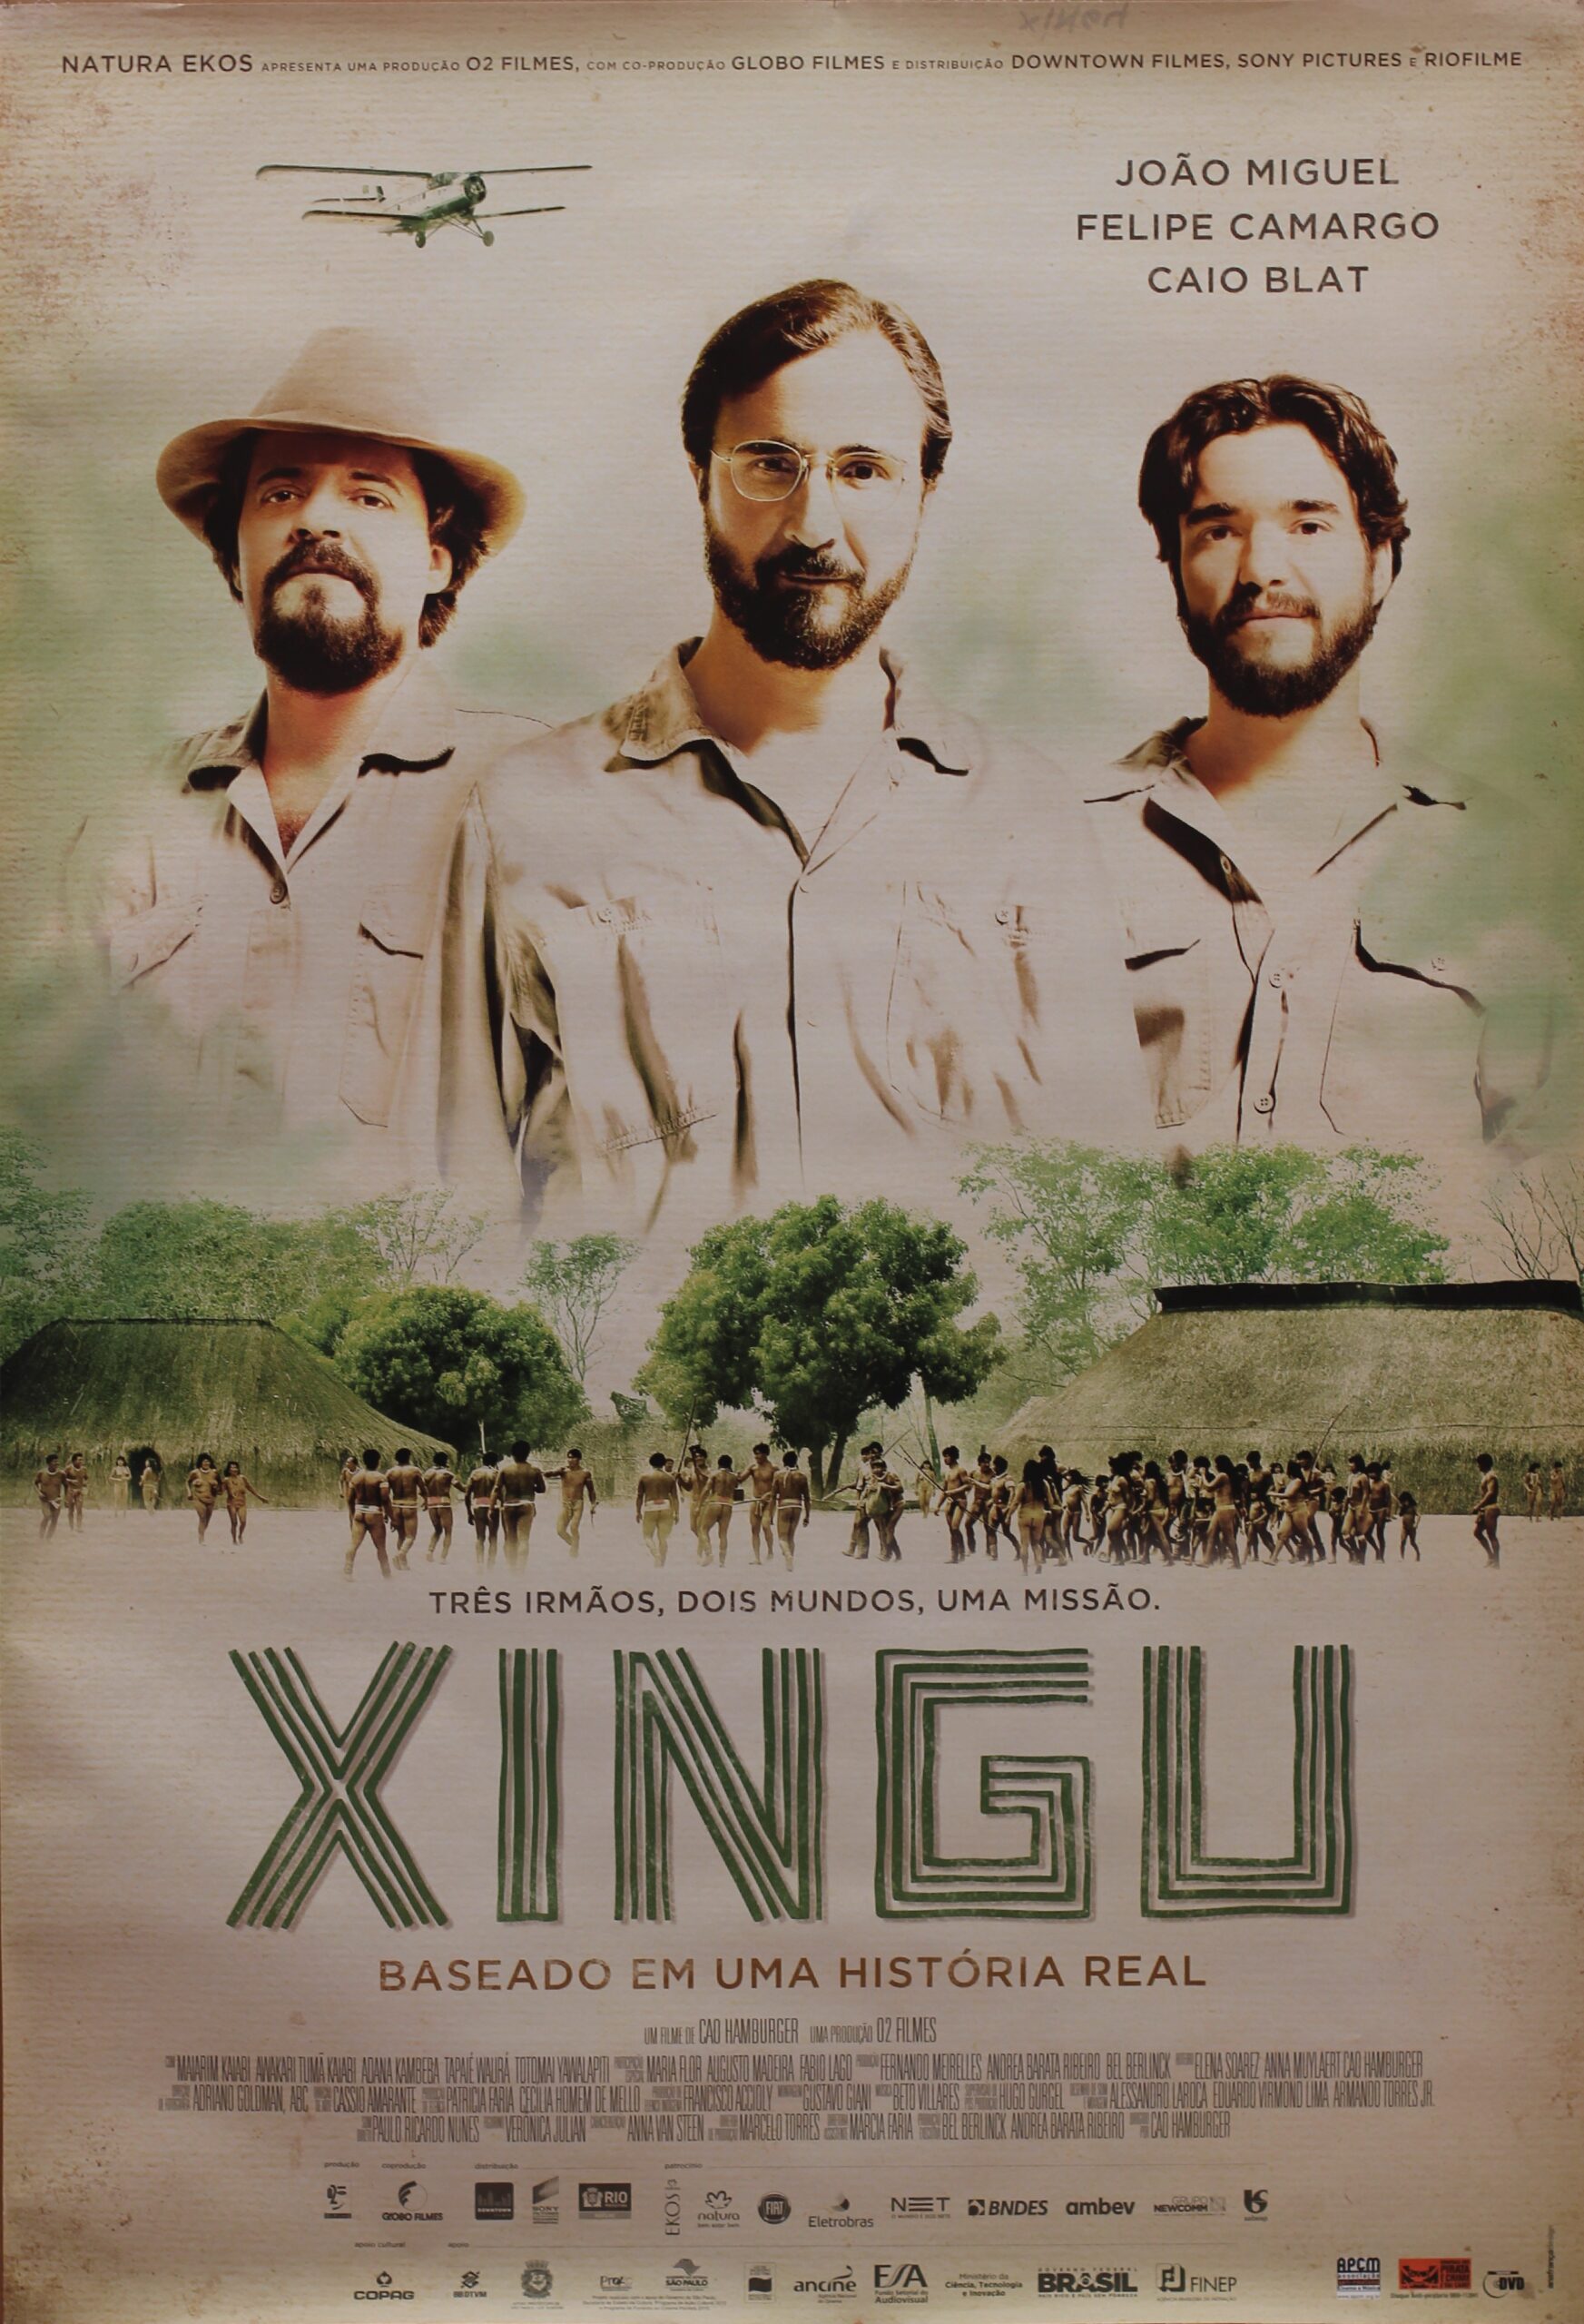 Xingu (2011)